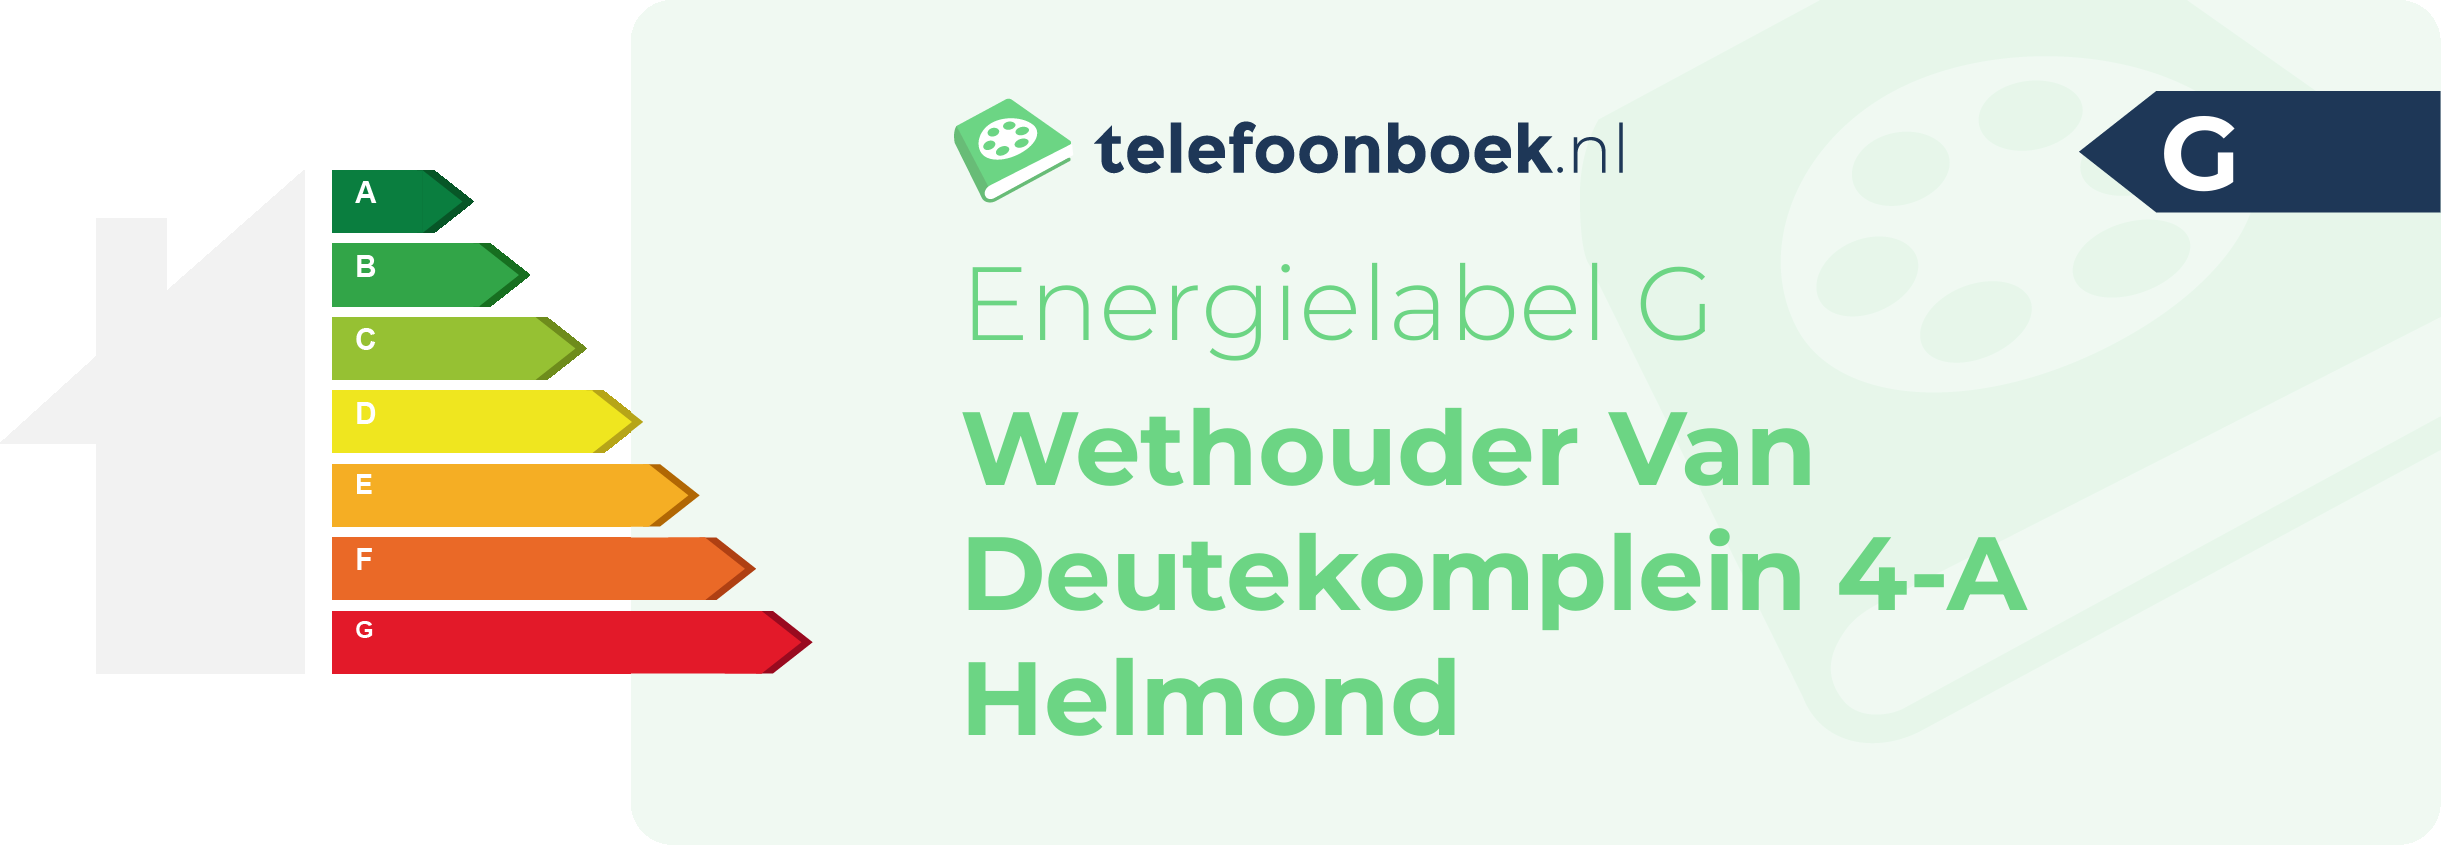 Energielabel Wethouder Van Deutekomplein 4-A Helmond